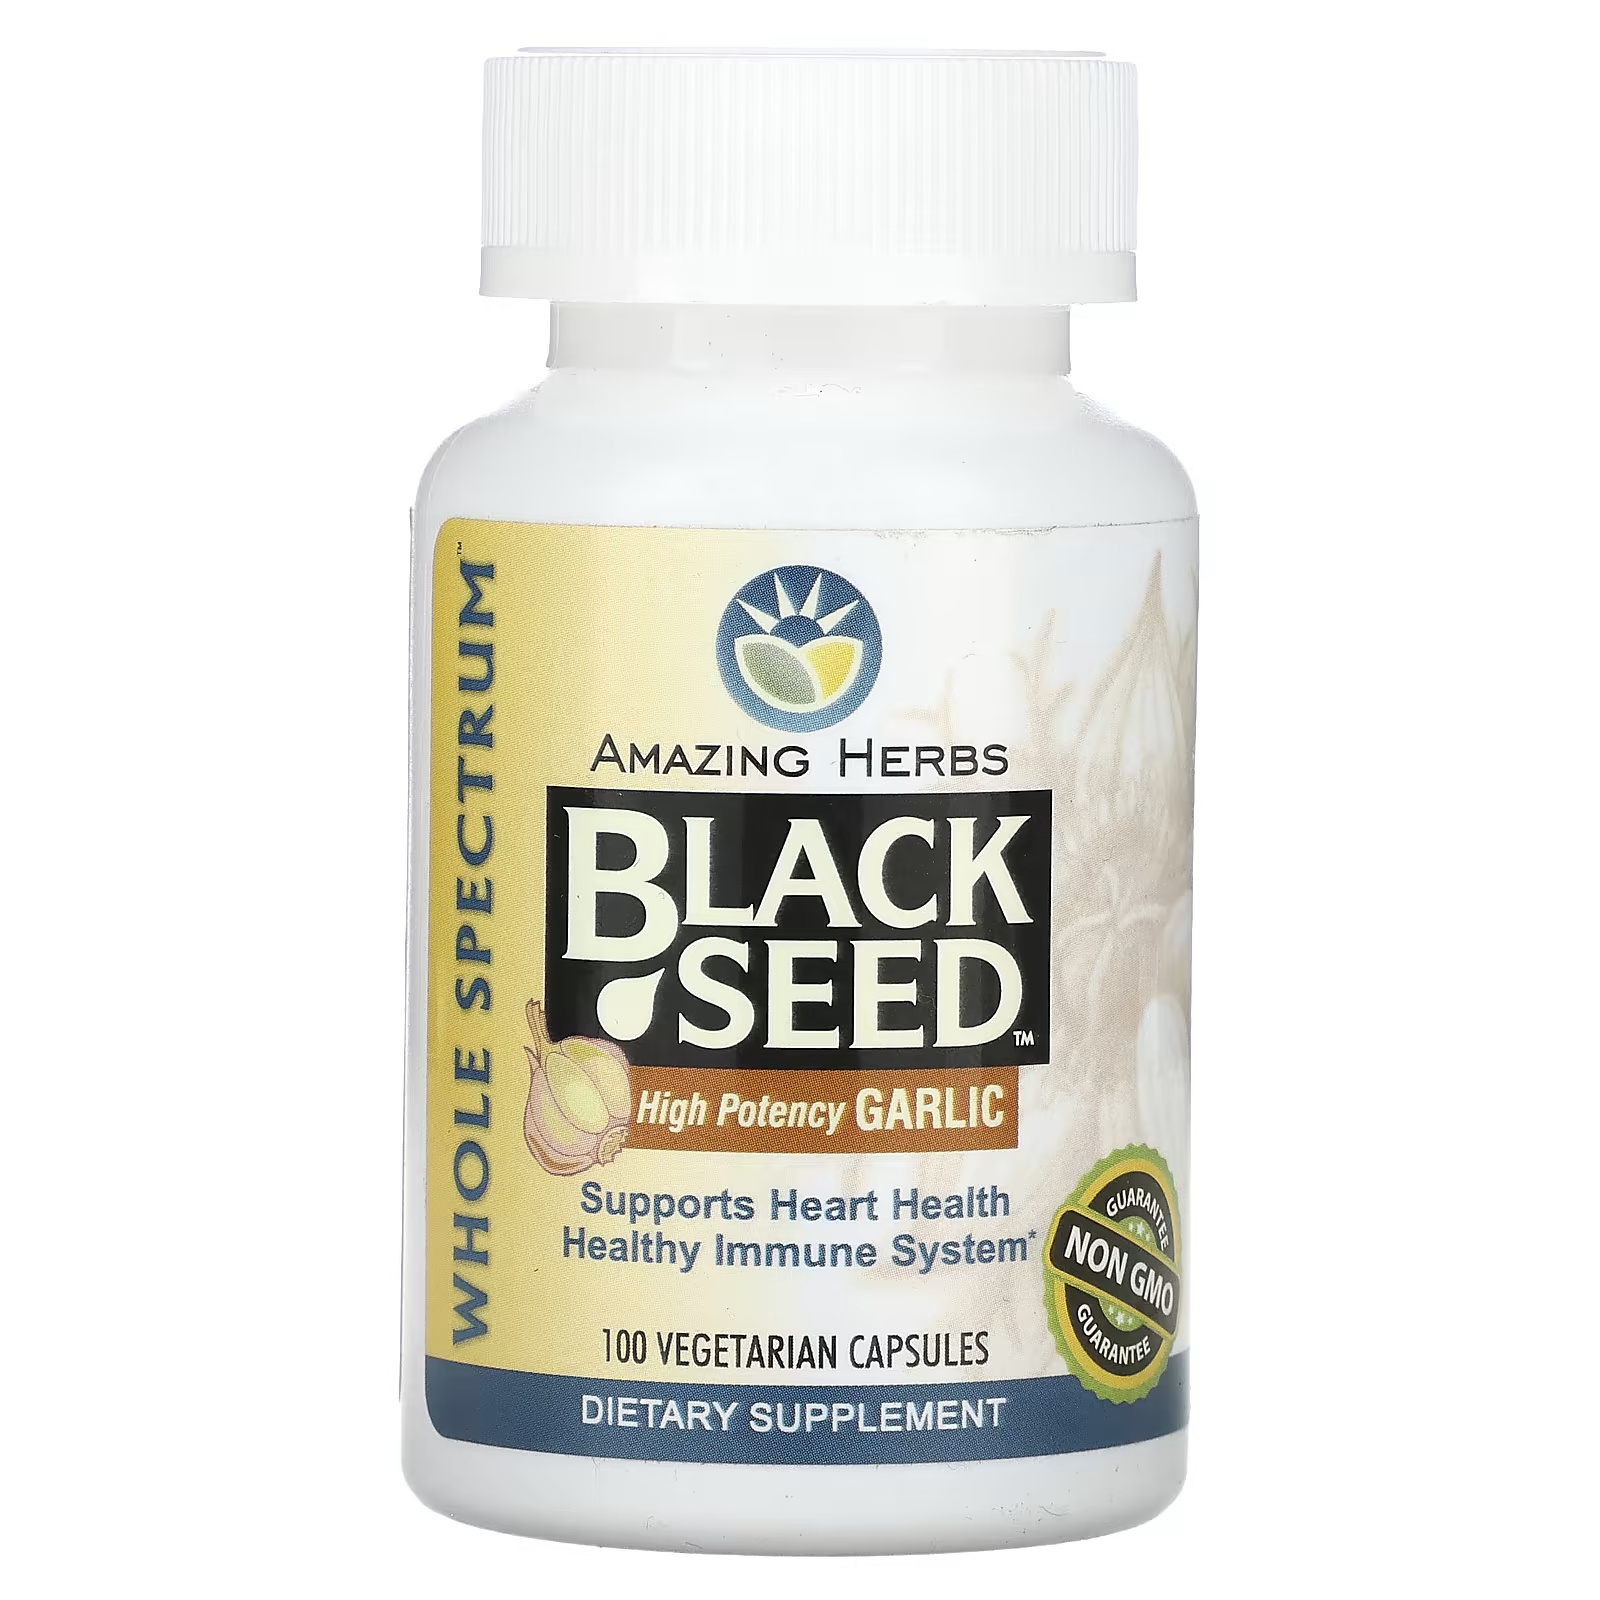 amazing herbs black seed original plain 100 вегетарианских капсул Высокоэффективный чеснок с черным семенем Amazing Herbs, 100 вегетарианских капсул